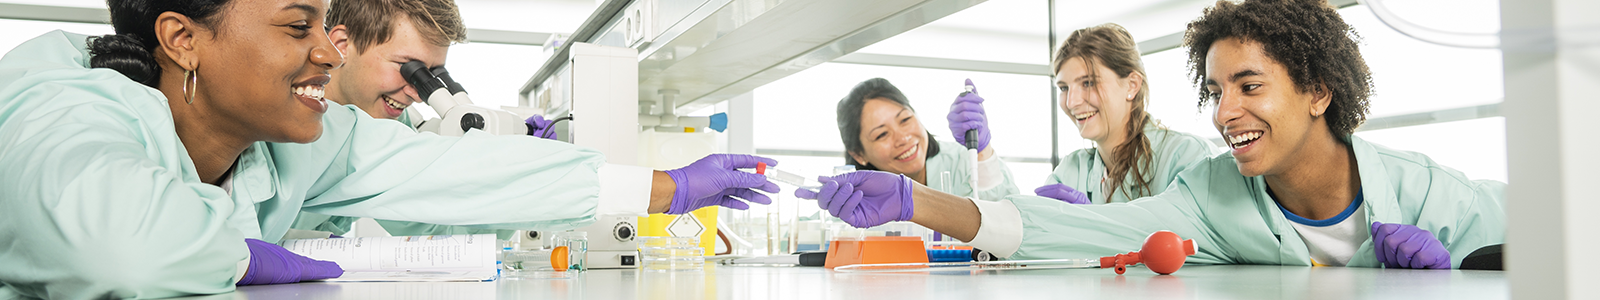 Studenten en docent Biomedische wetenschappen volgen onderwijs in het laboratorium